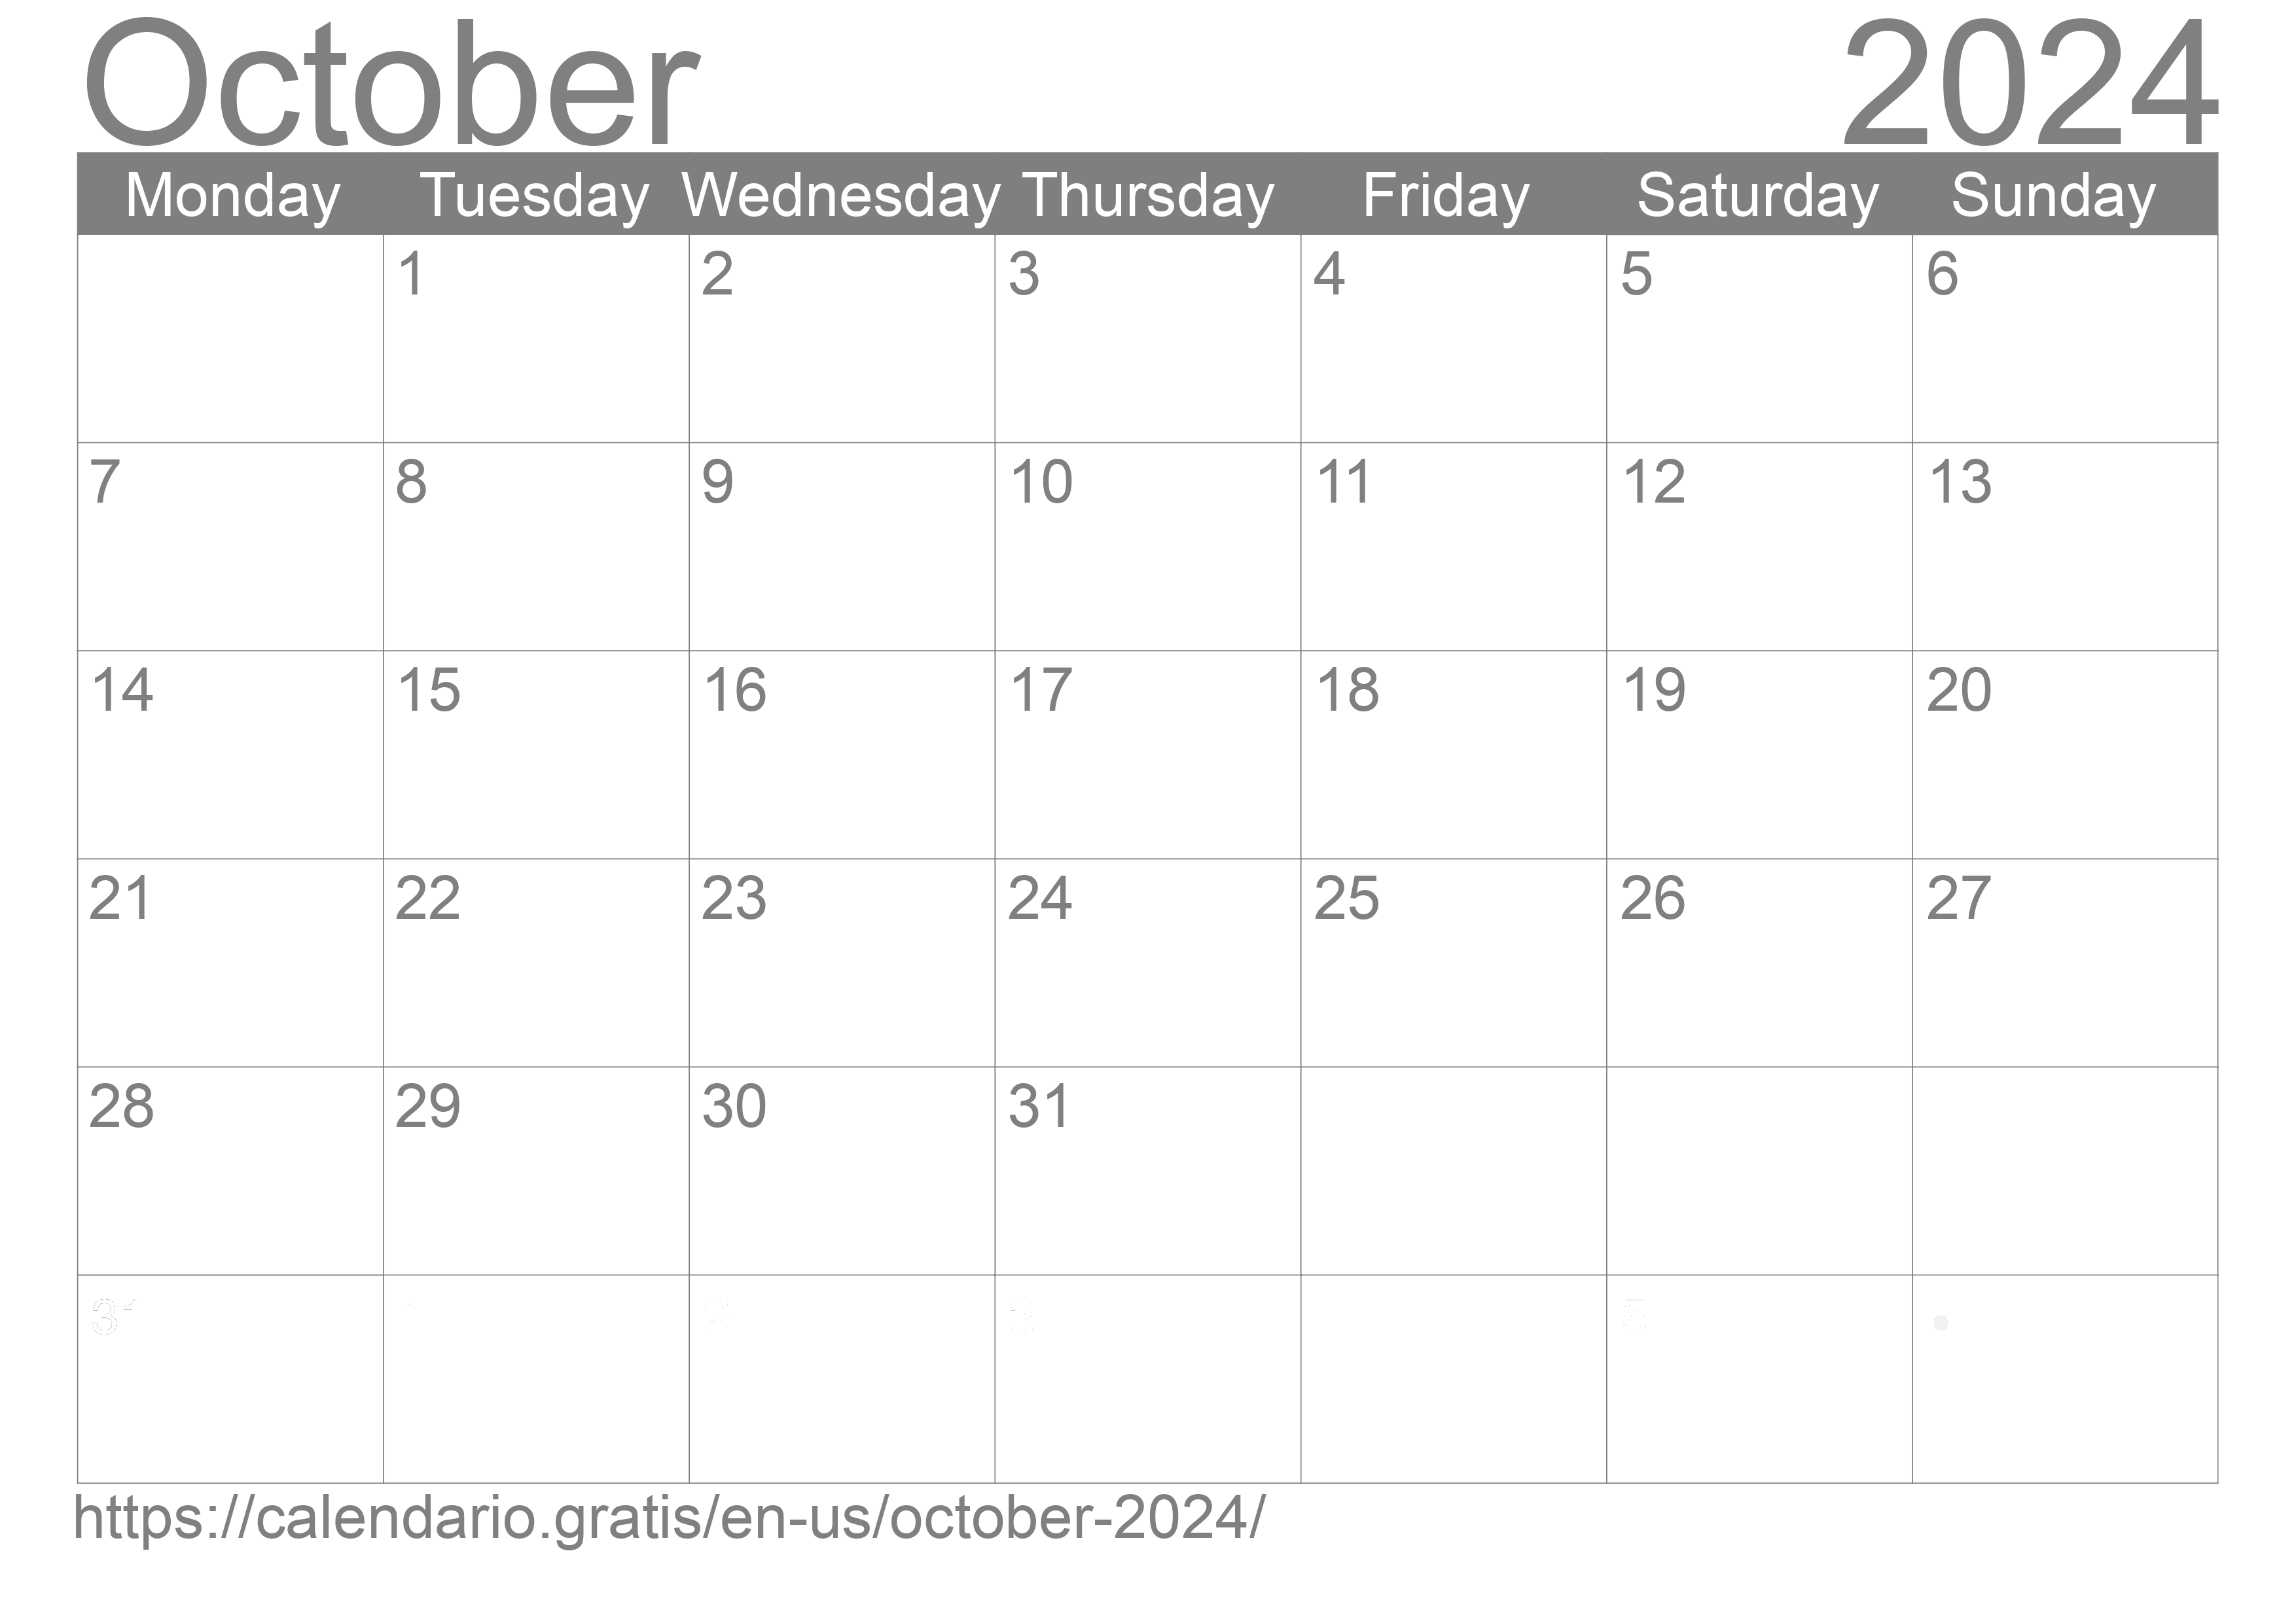 calendar-october-2024-from-united-states-of-america-in-english-calendario-gratis